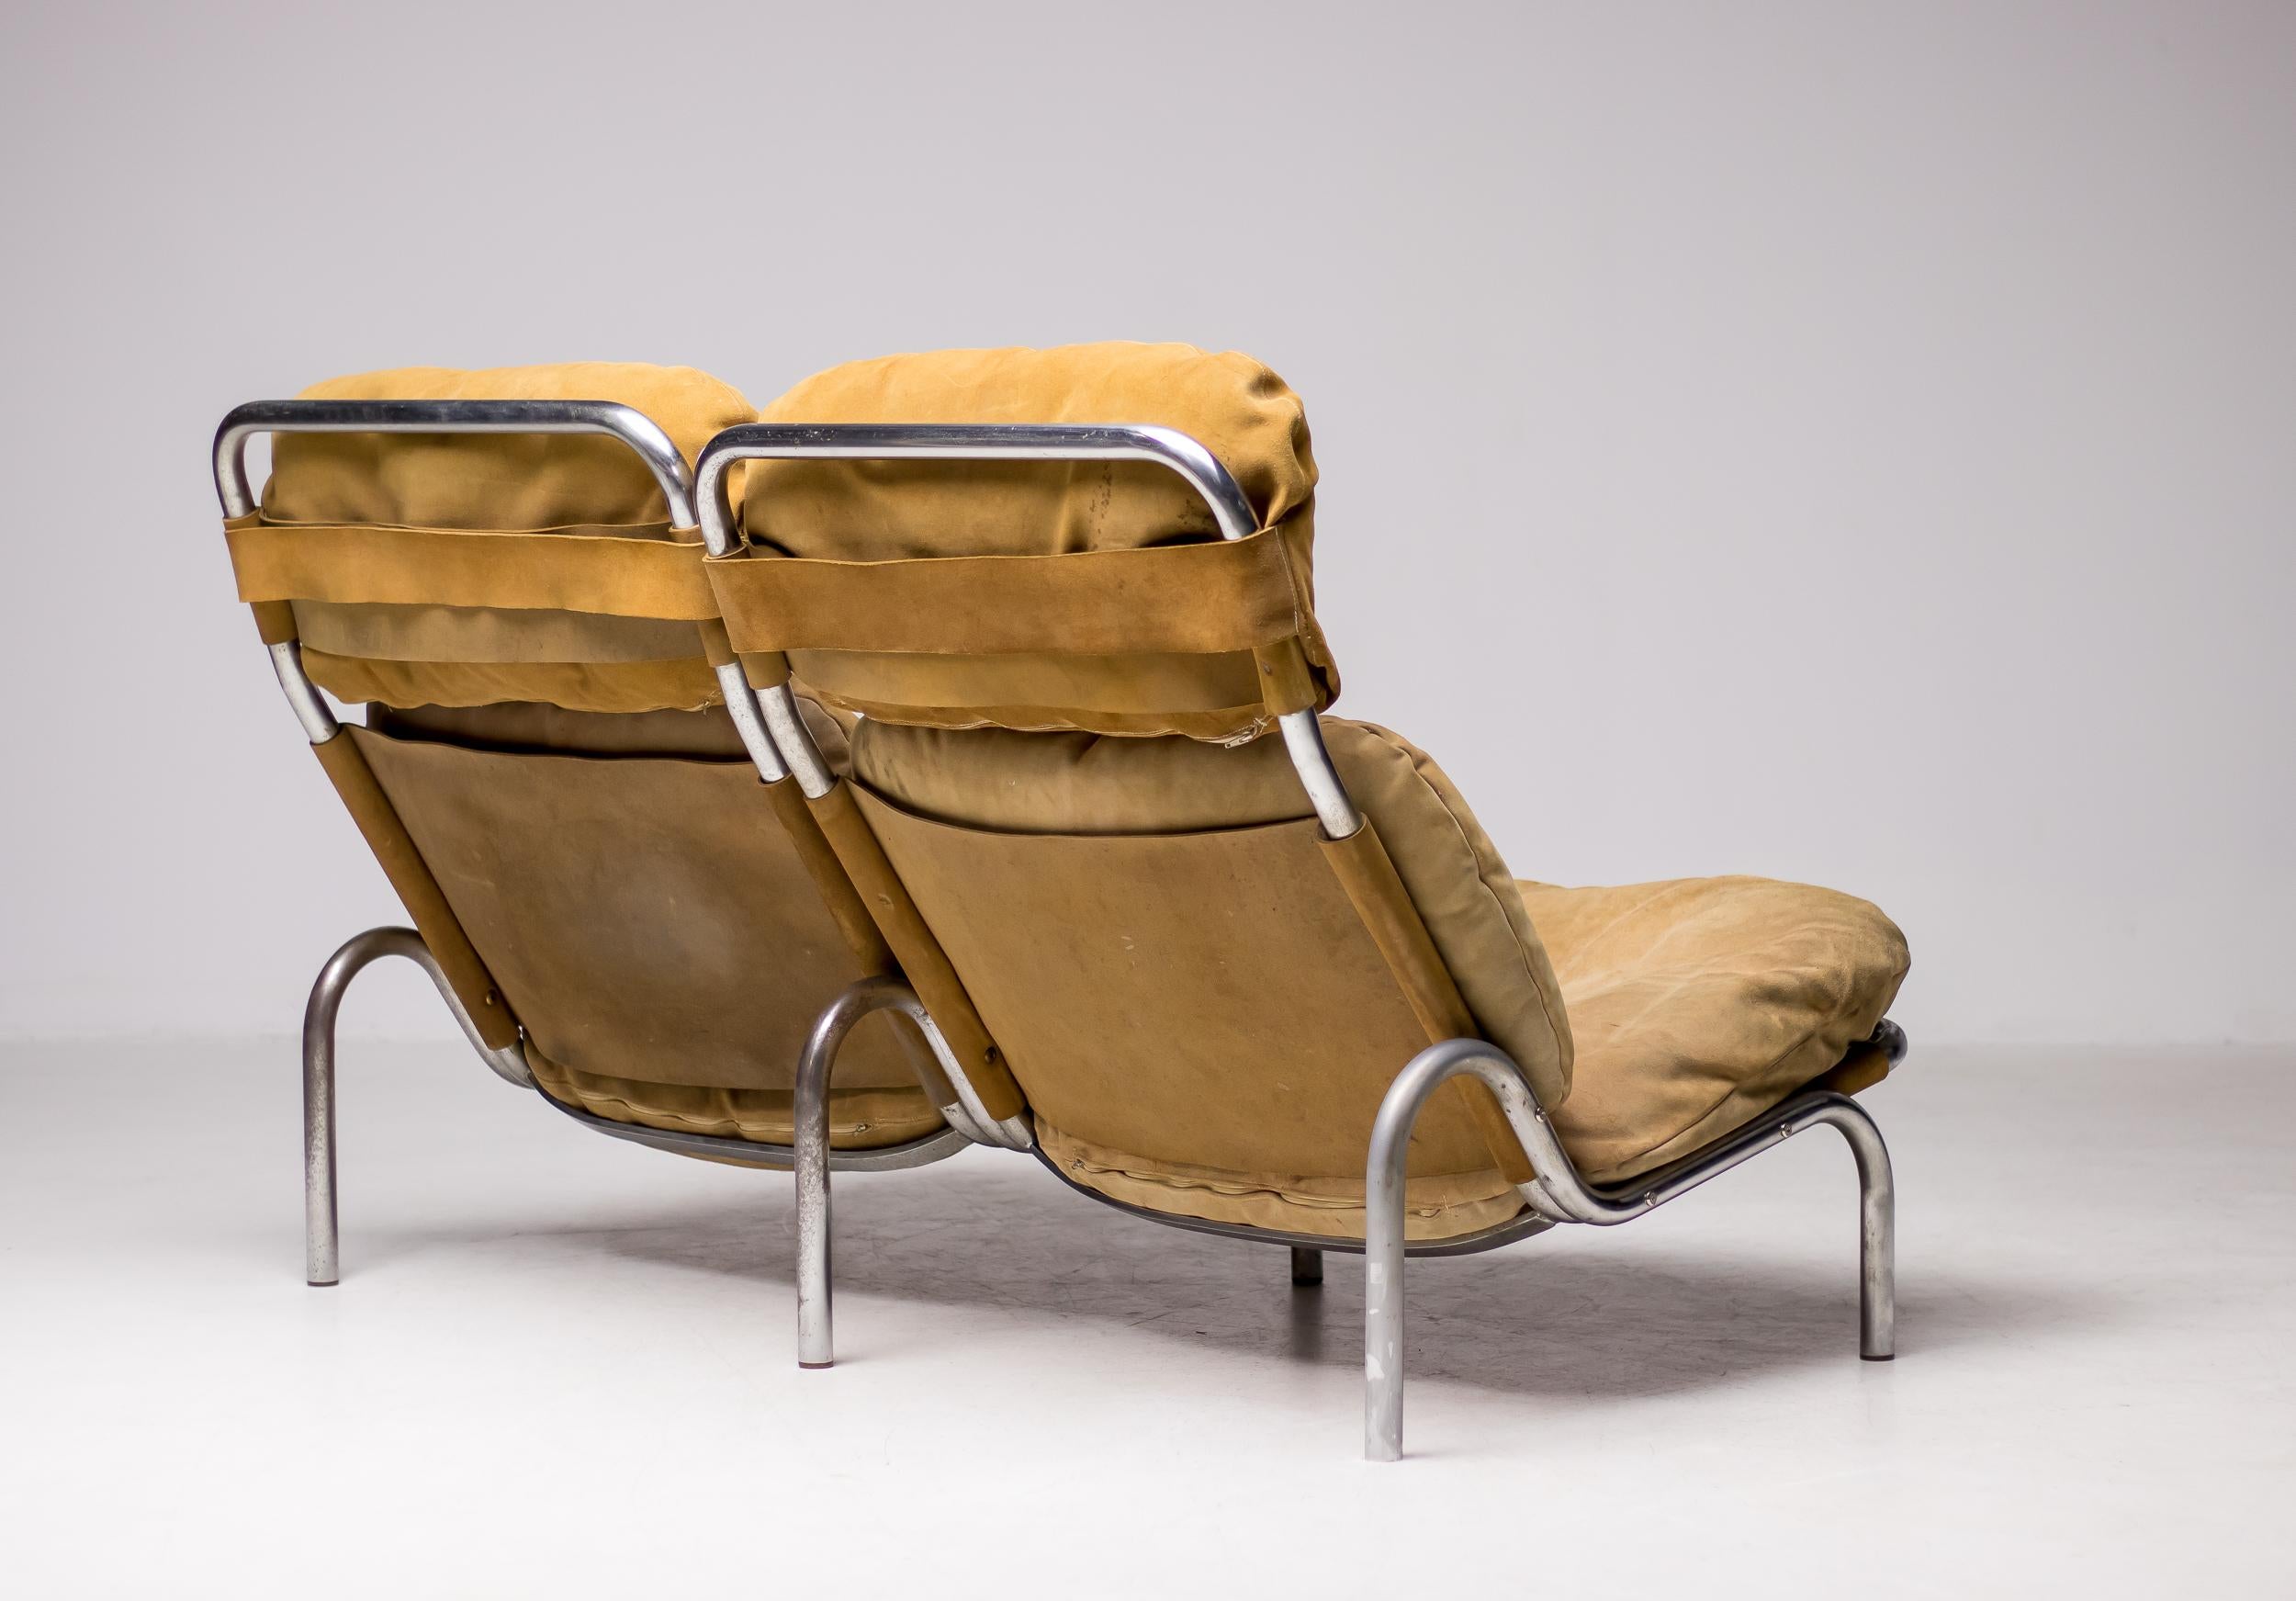 Sehr seltenes zweisitziges Sofa, wahrscheinlich ein Einzelstück, entworfen von Erik Ole Jørgensen für Georg Jørgensen & Søn, Dänemark, 1960. Alle ursprünglichen natürlichen Wildlederbezüge in schönem Vintage-Zustand.

Erik Ole Jørgensen (1925-2002)